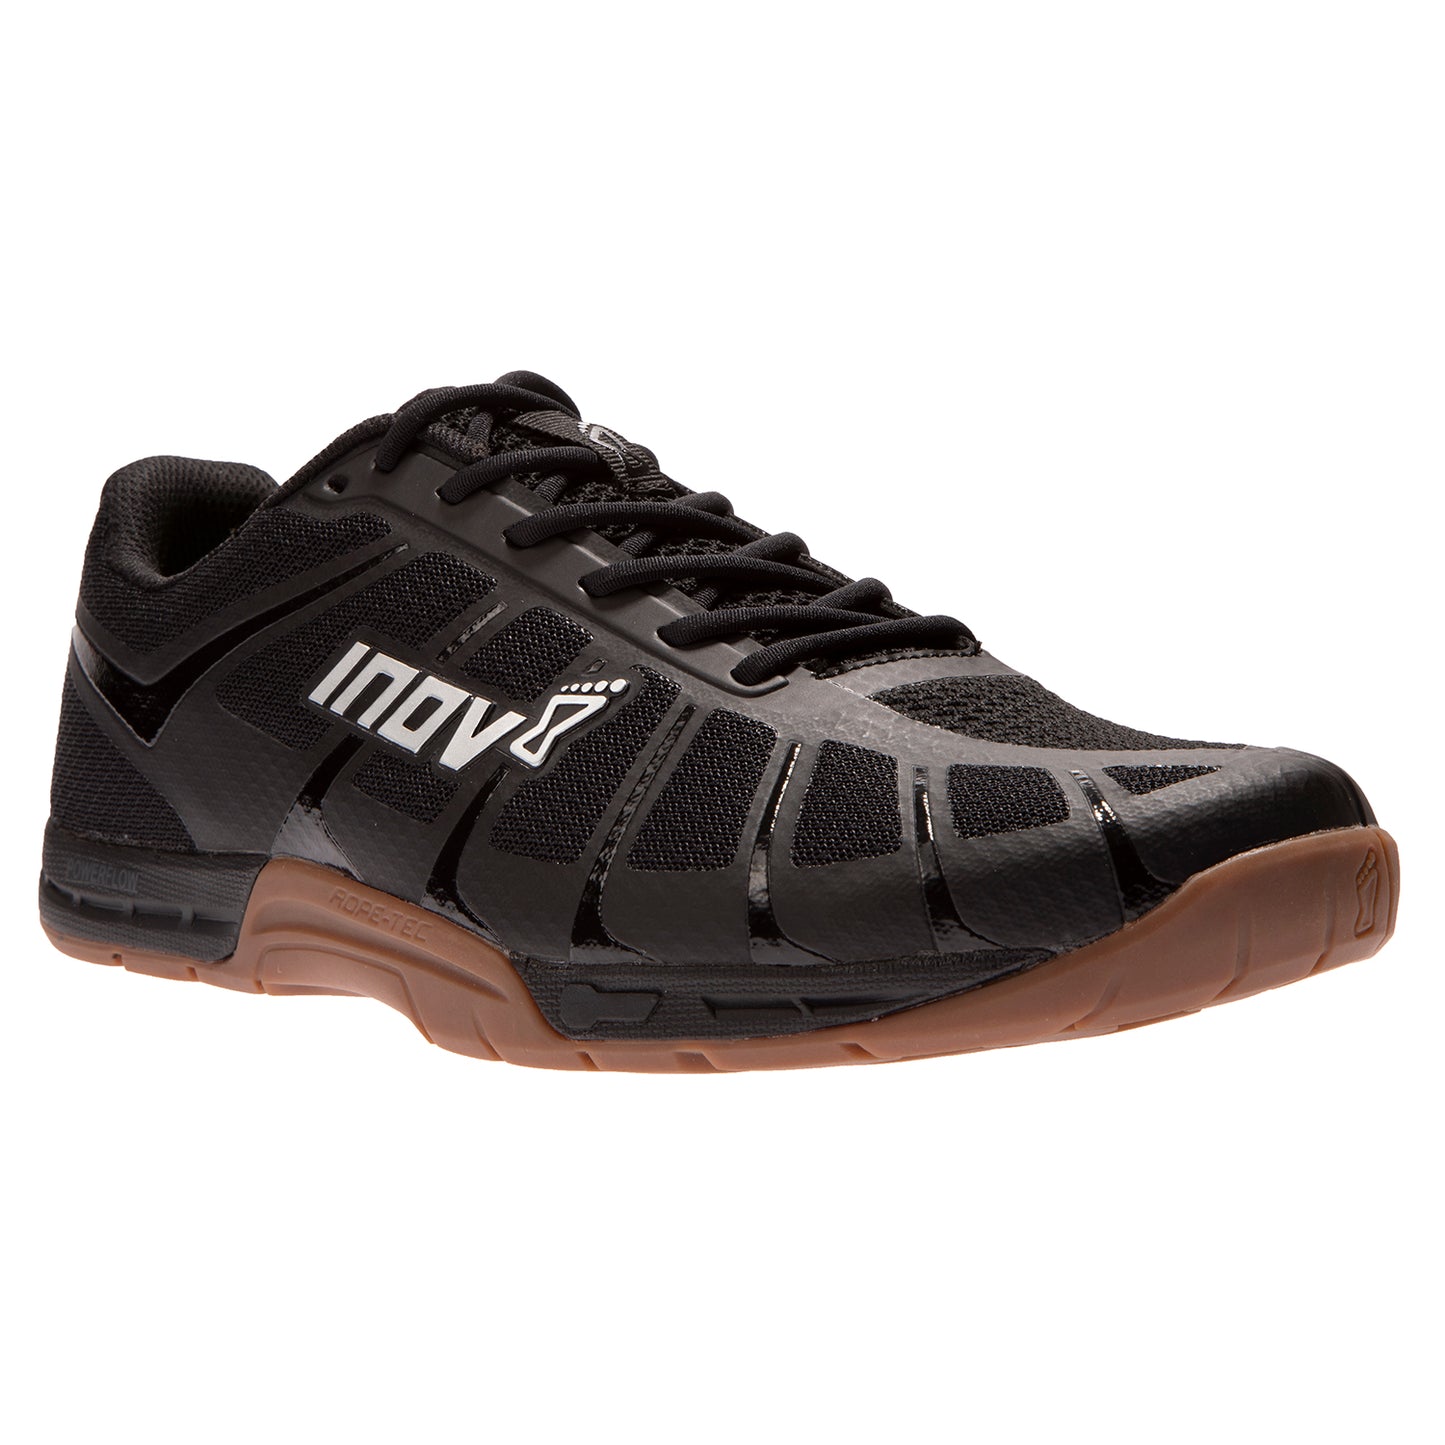 Men's F Lite 235 v3 Cross Training Shoe - Black/Gum - Regular (D)